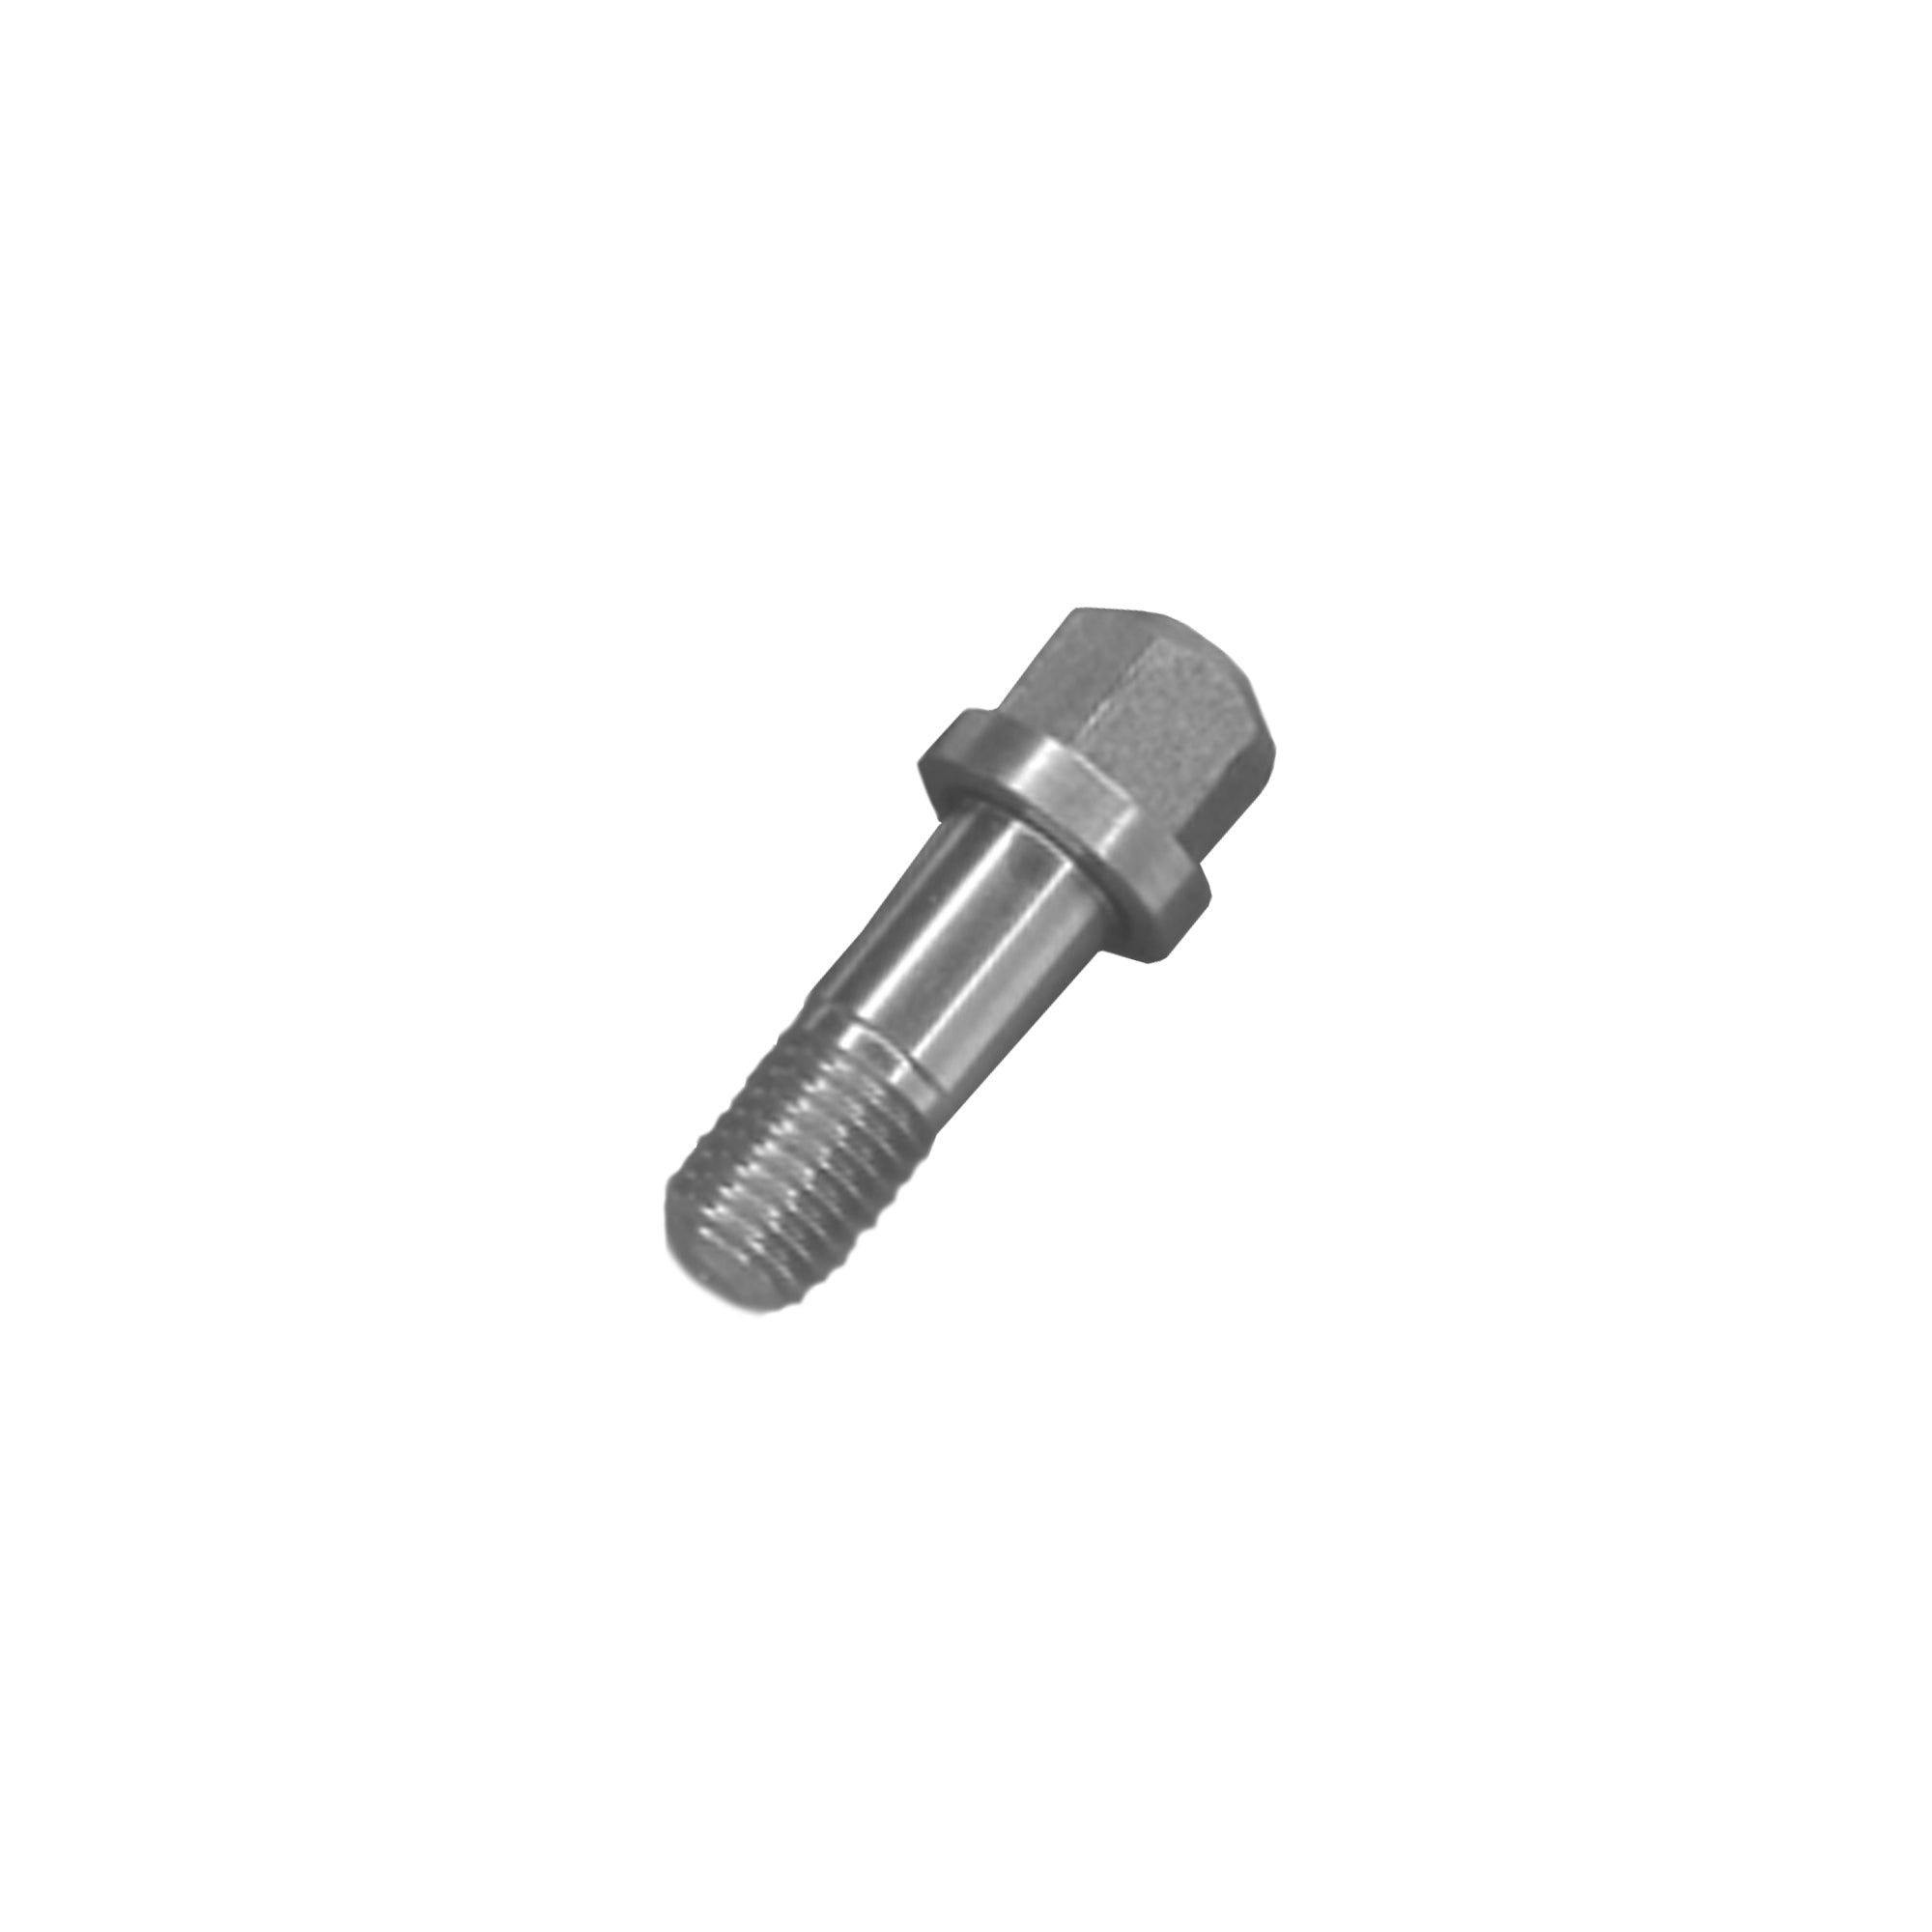 295433 -Coupling block mounting screw - PURspray